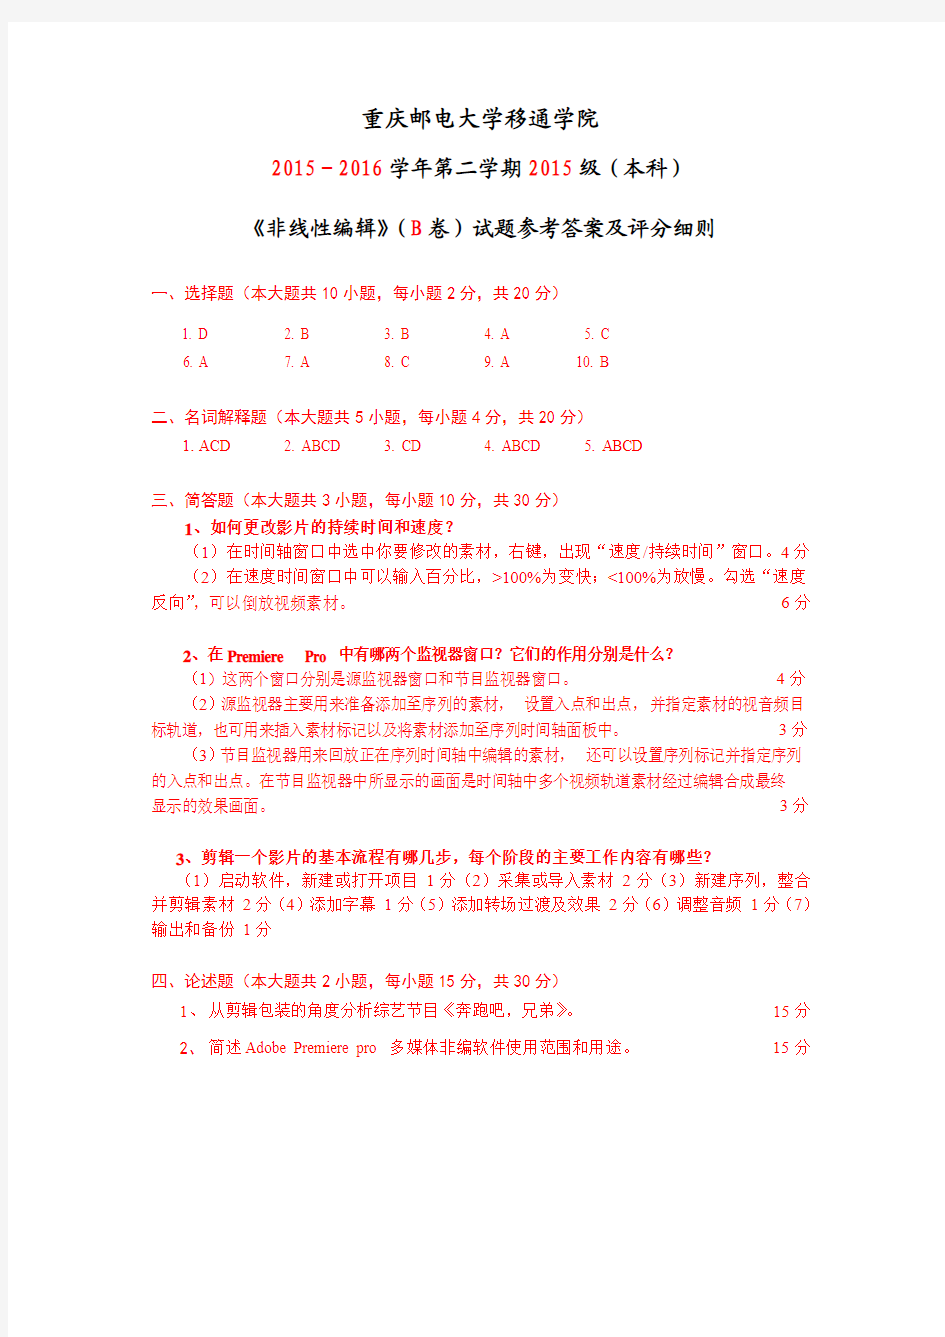 补考 重庆邮电大学移通学院课程考试参考答案及评分细则